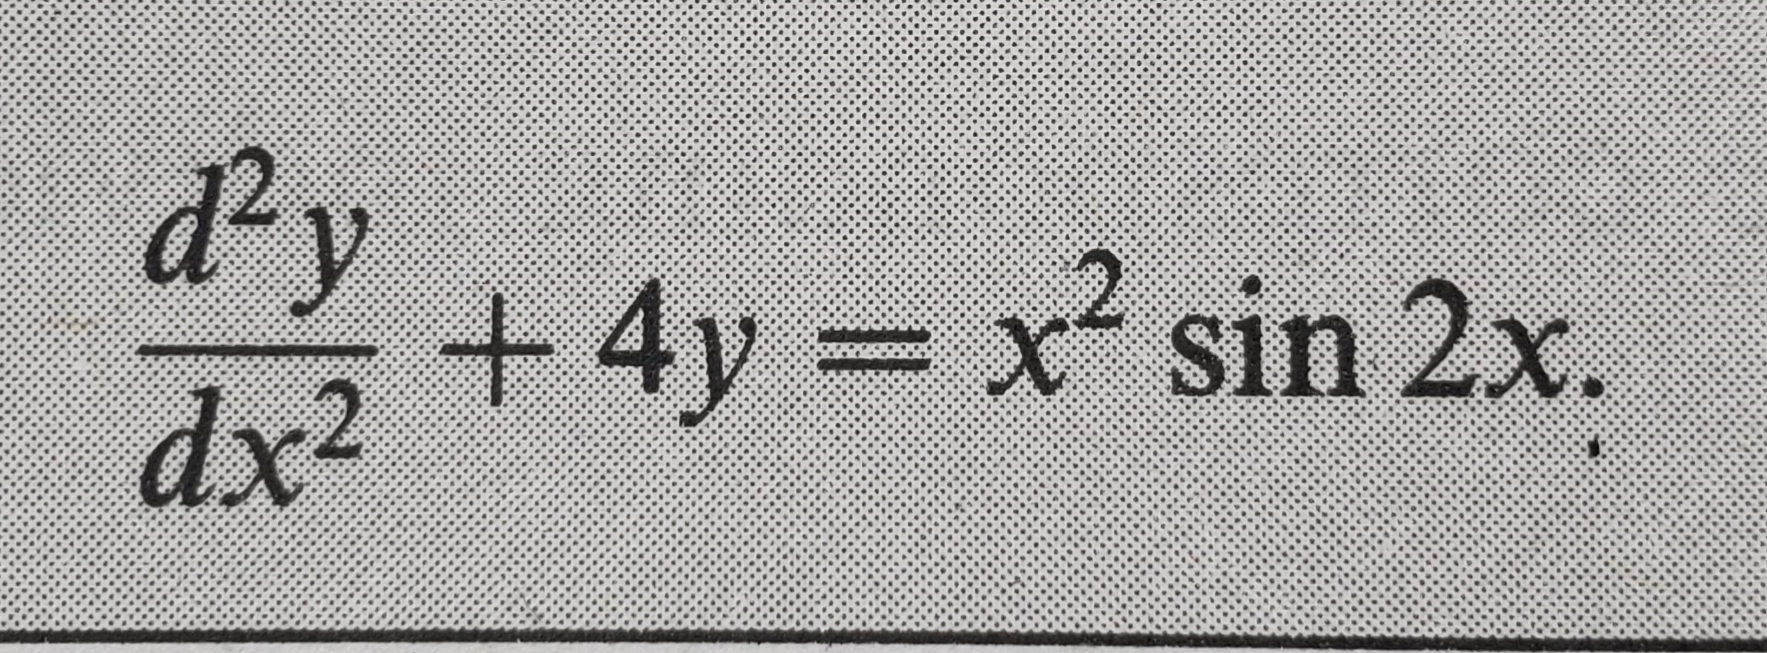 d2
dx2
2
+4y=x' sin 2x
